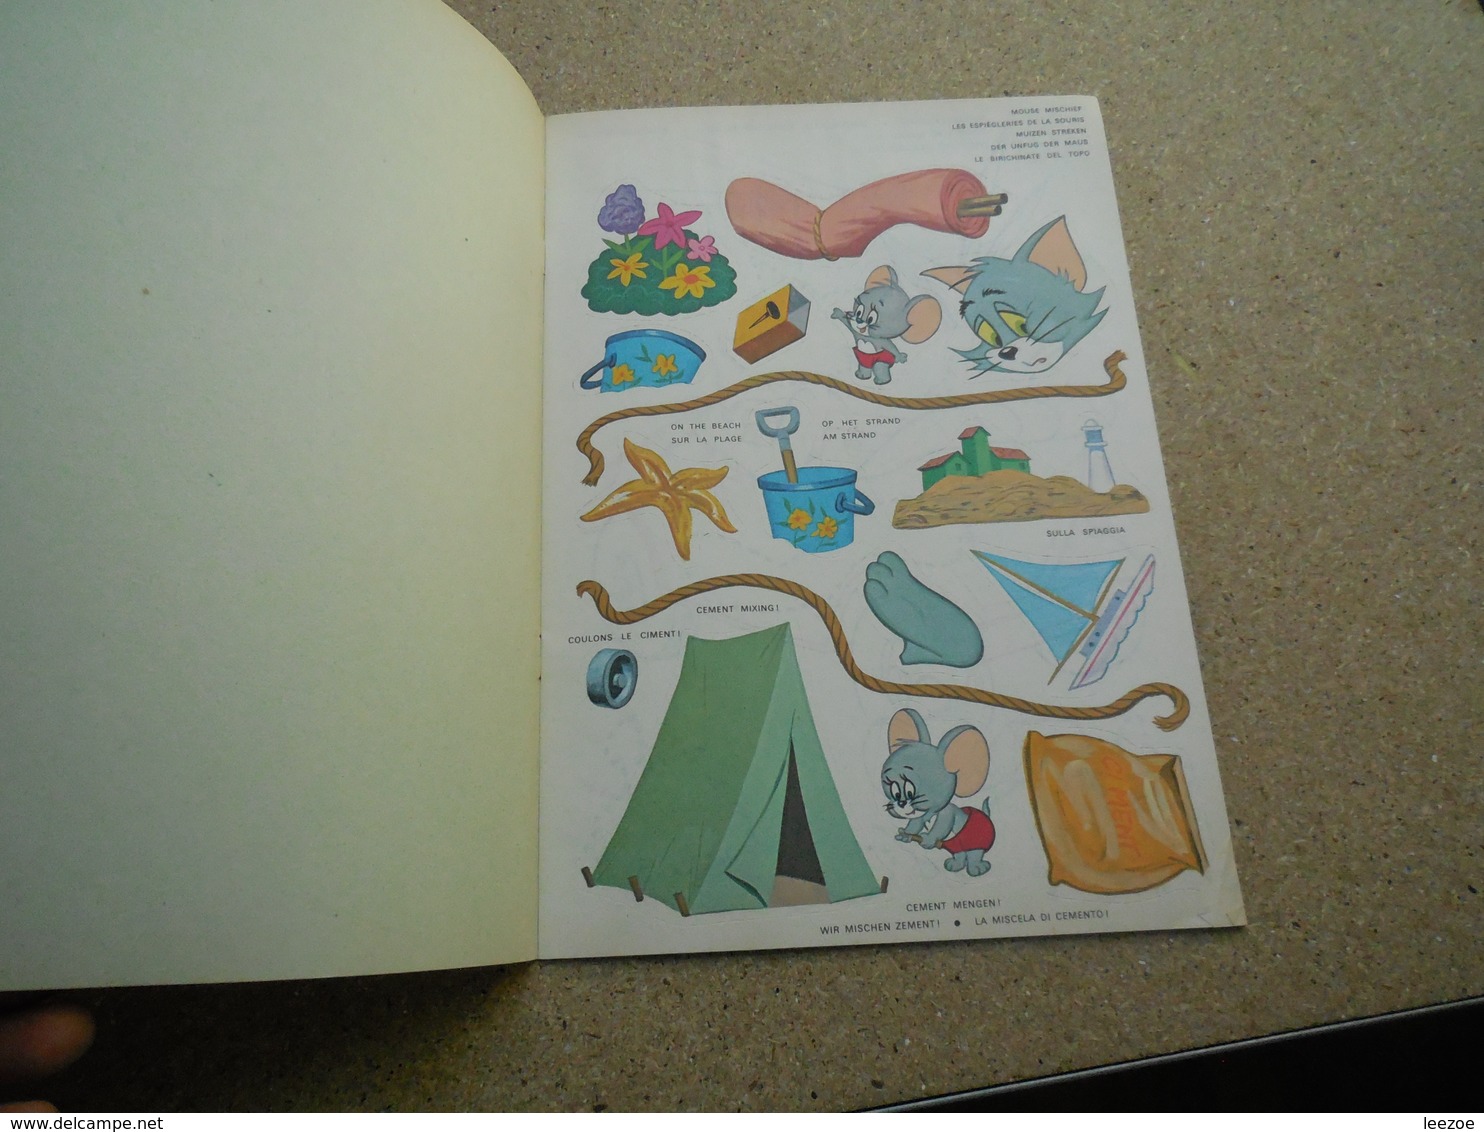 Tom Et Jerry Sticker Fun, Collages Amusant Whitman, Rare..3C0420 - Autocollants